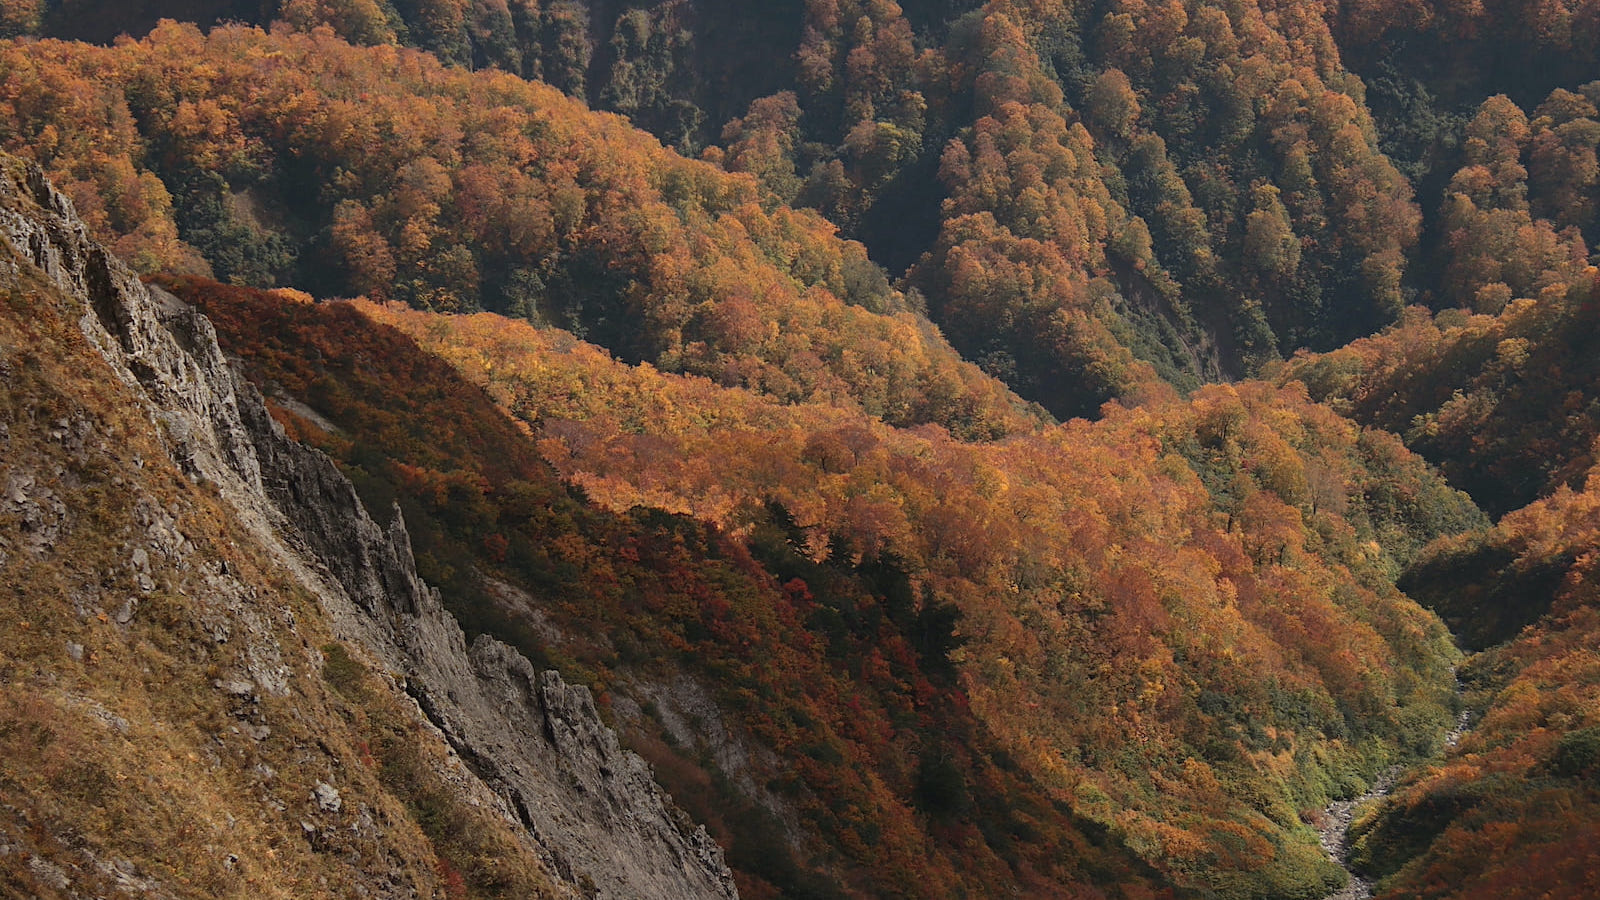 紅葉が魅せる一期一会の風景。女神様が待つ「雨飾山」登山レポート